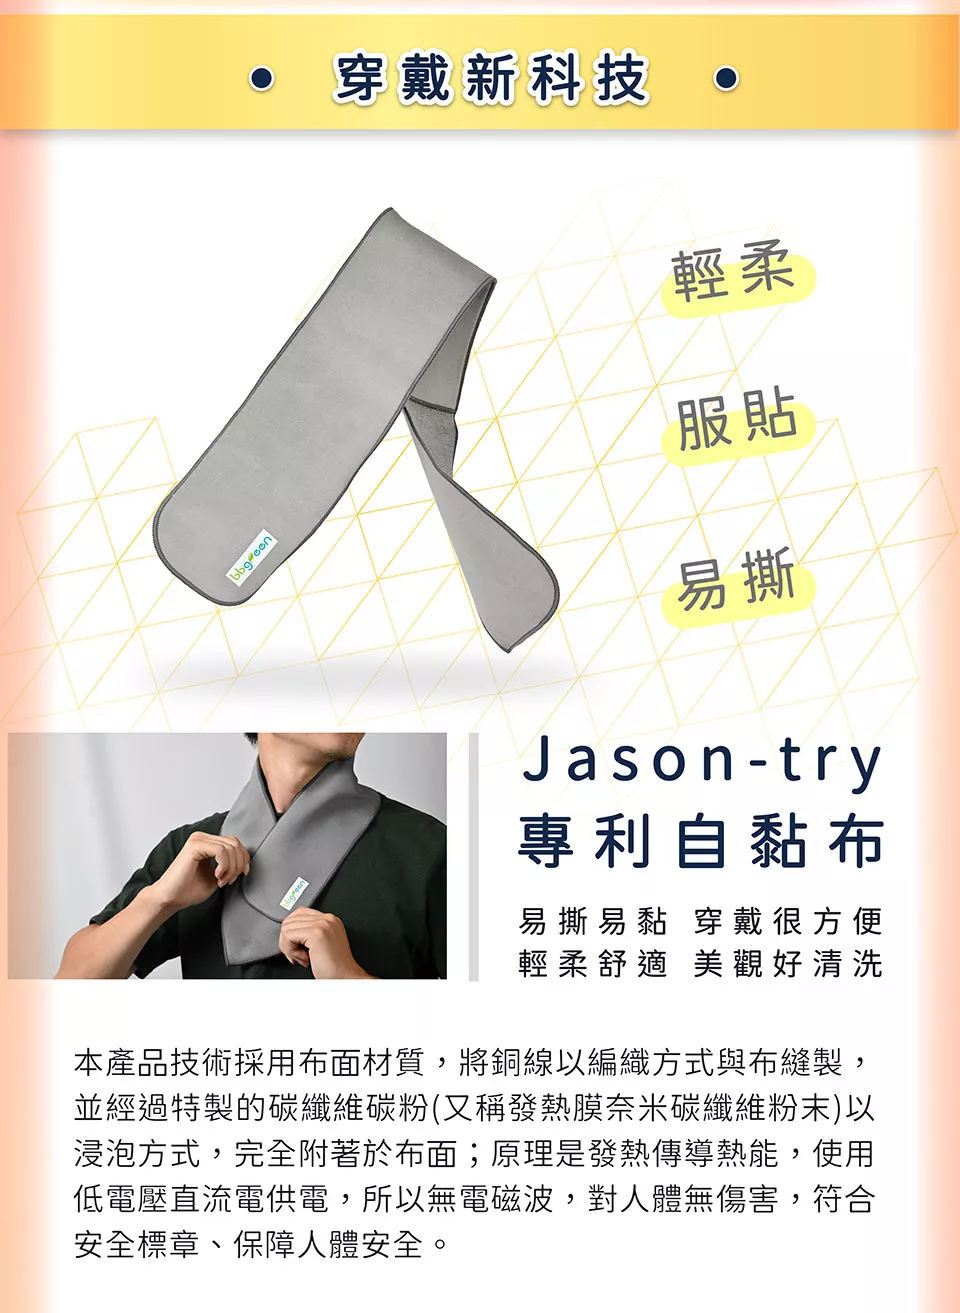 穿戴新科技 輕柔 服貼 易貼 Jason-try 專利自黏布 輕柔舒適 穿戴方便